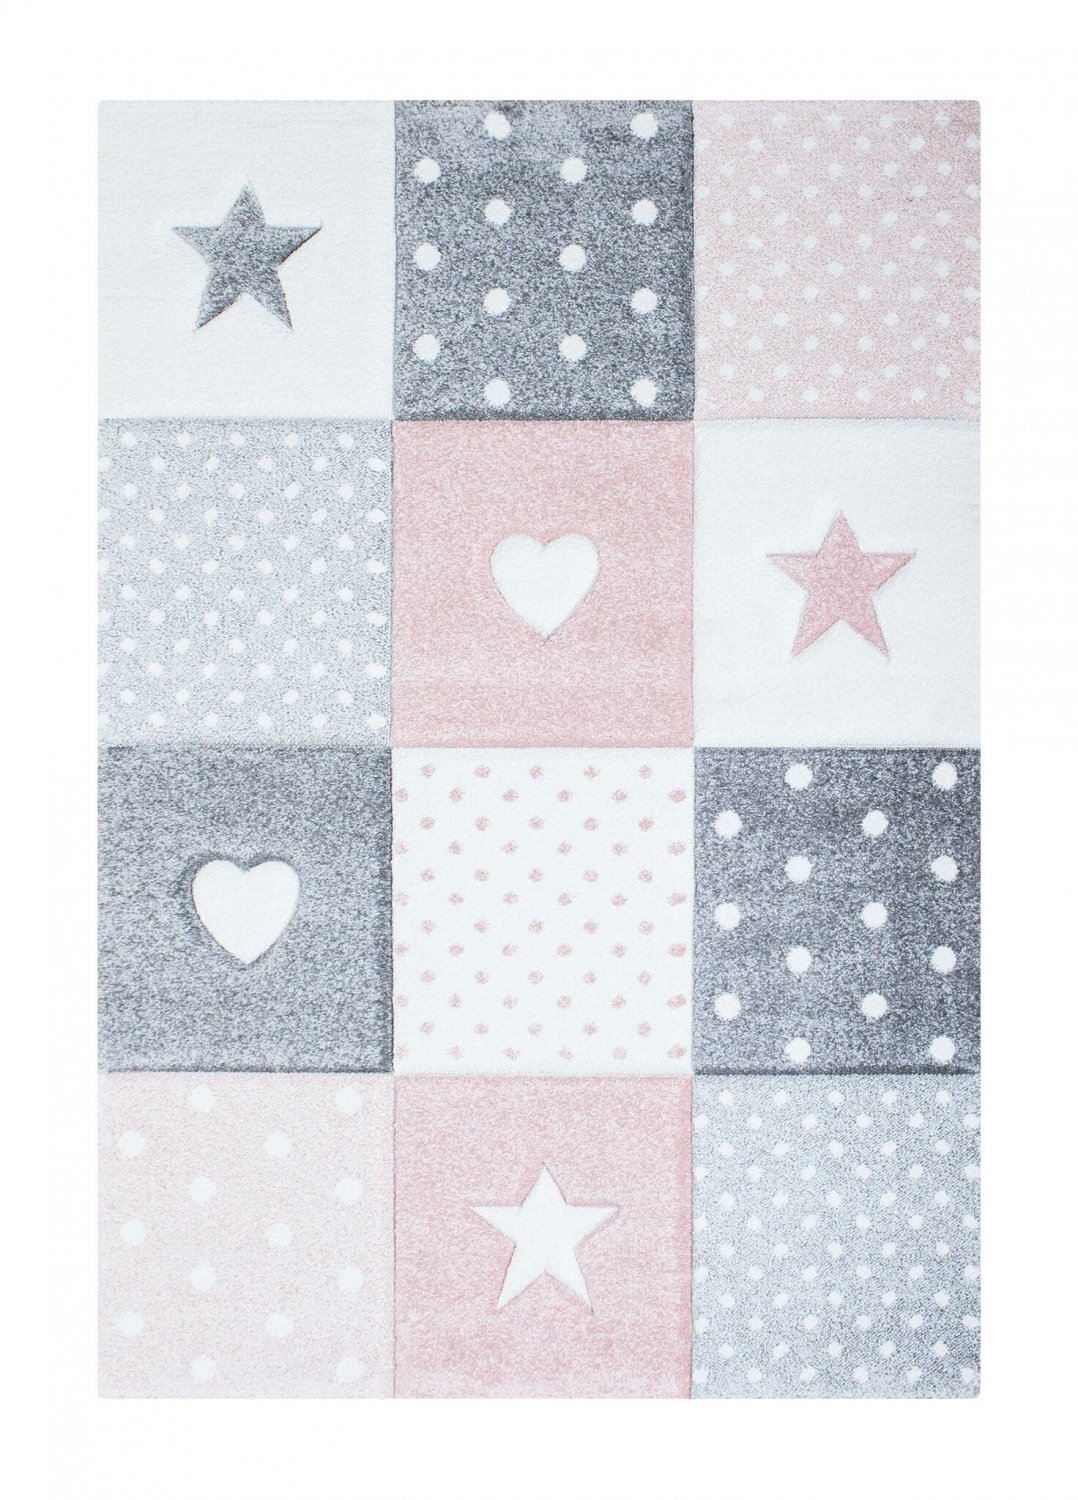 CHILDRENS RUGS rug for children room CHILDRENS RUGS for boy girl Atlas Star pink star